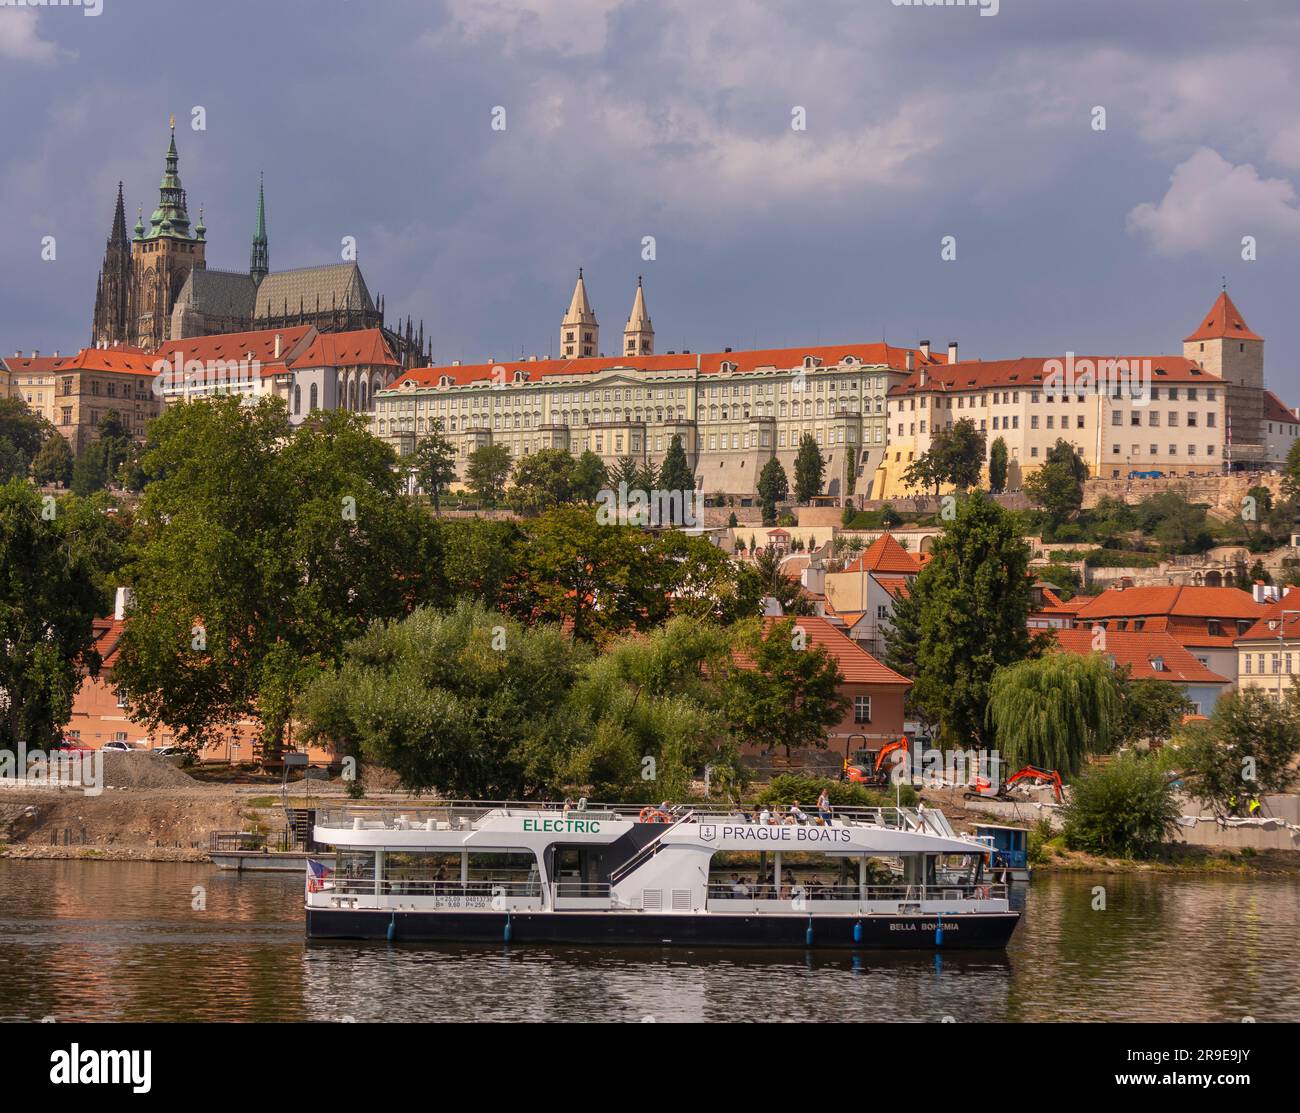 PRAGUE, RÉPUBLIQUE TCHÈQUE, EUROPE - croisière en bateau sur la Vltava. Cathédrale Saint-Vitus, en haut à gauche, et château de Prague. Banque D'Images